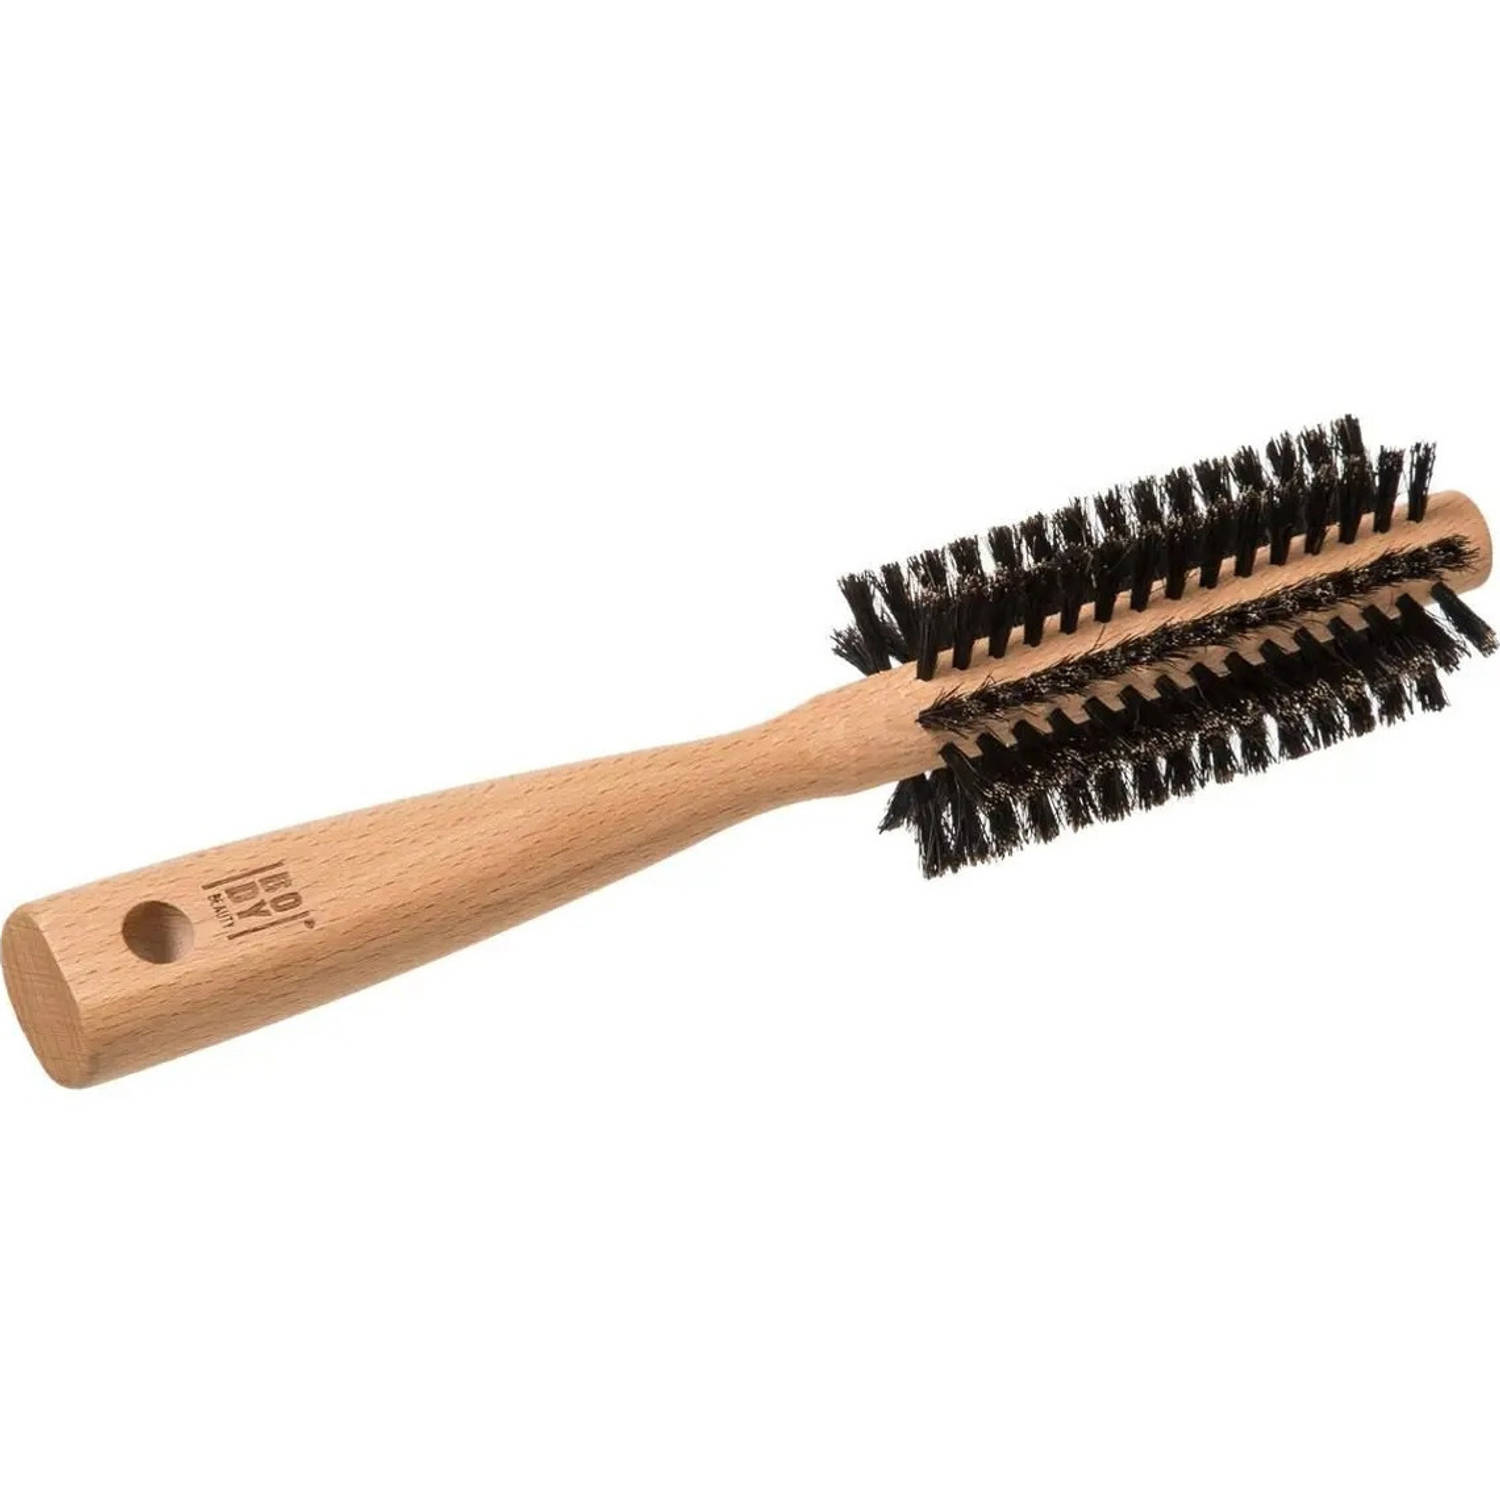 Haarborstel rond naturel met varkenshaar 24 cm van hout - Persoonlijke verzorging artikelen - Haarborstels